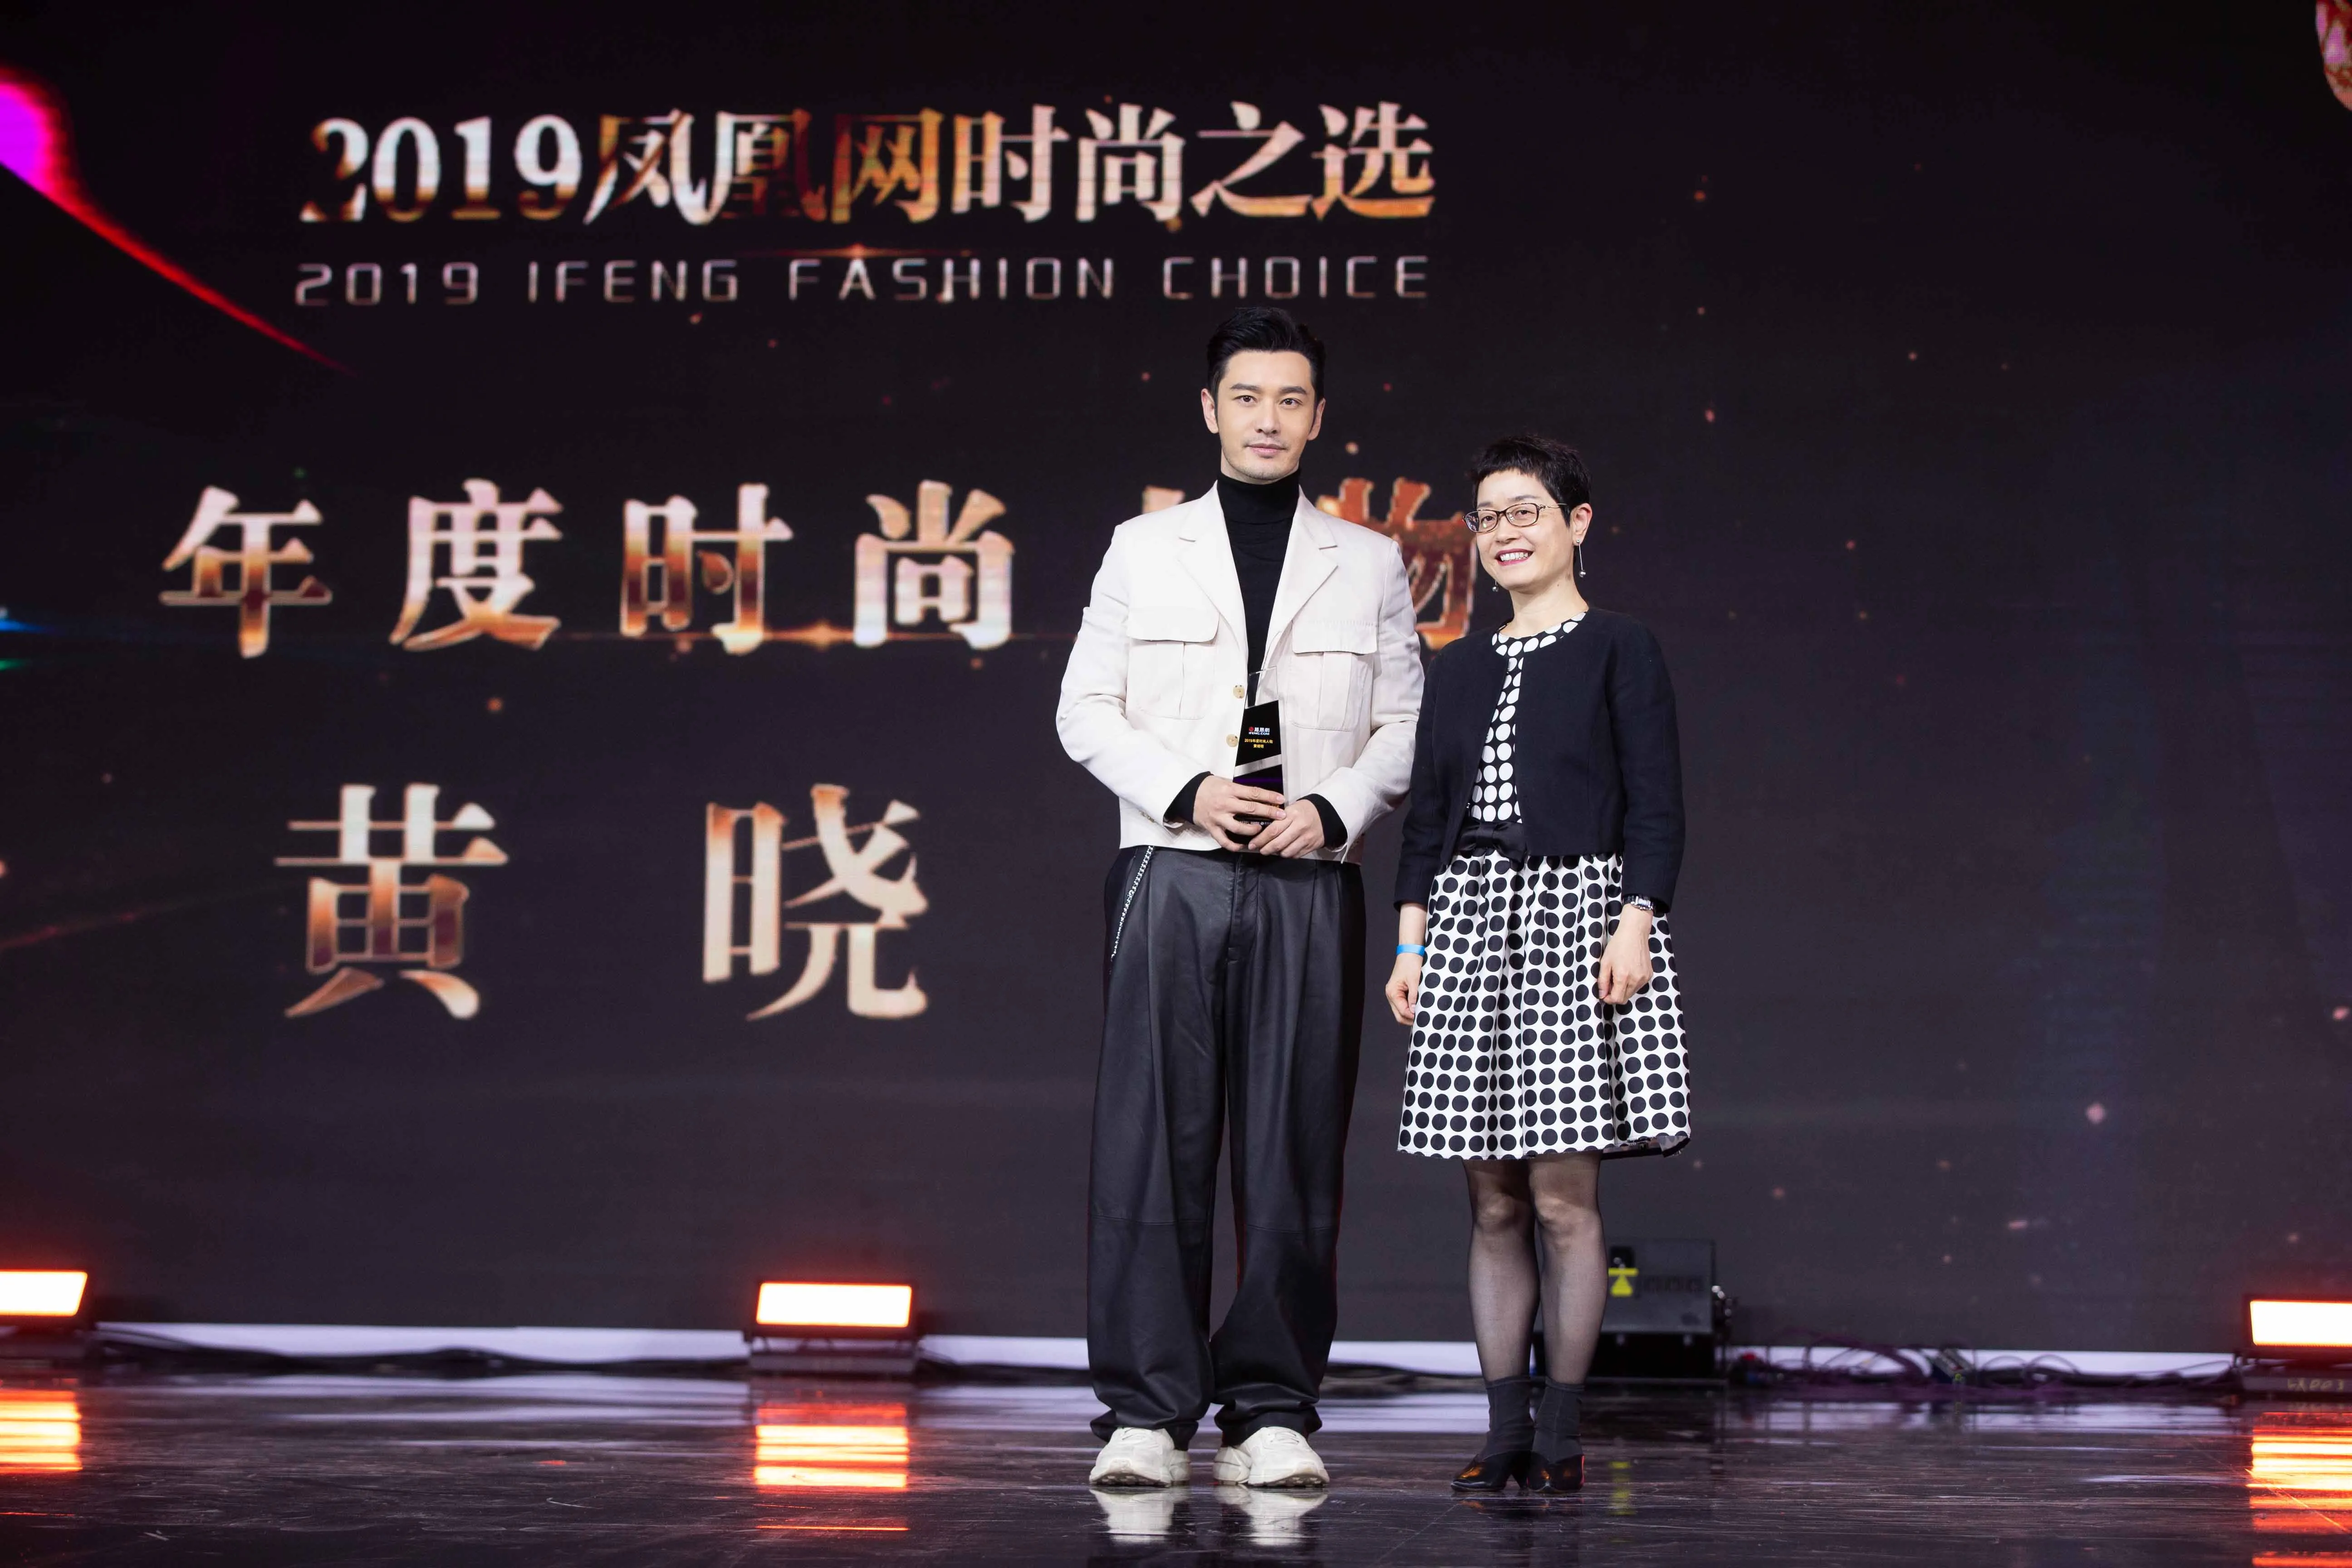  Xiaoming Huang 被授予2019凤凰时尚之选年度人物荣誉.jpg